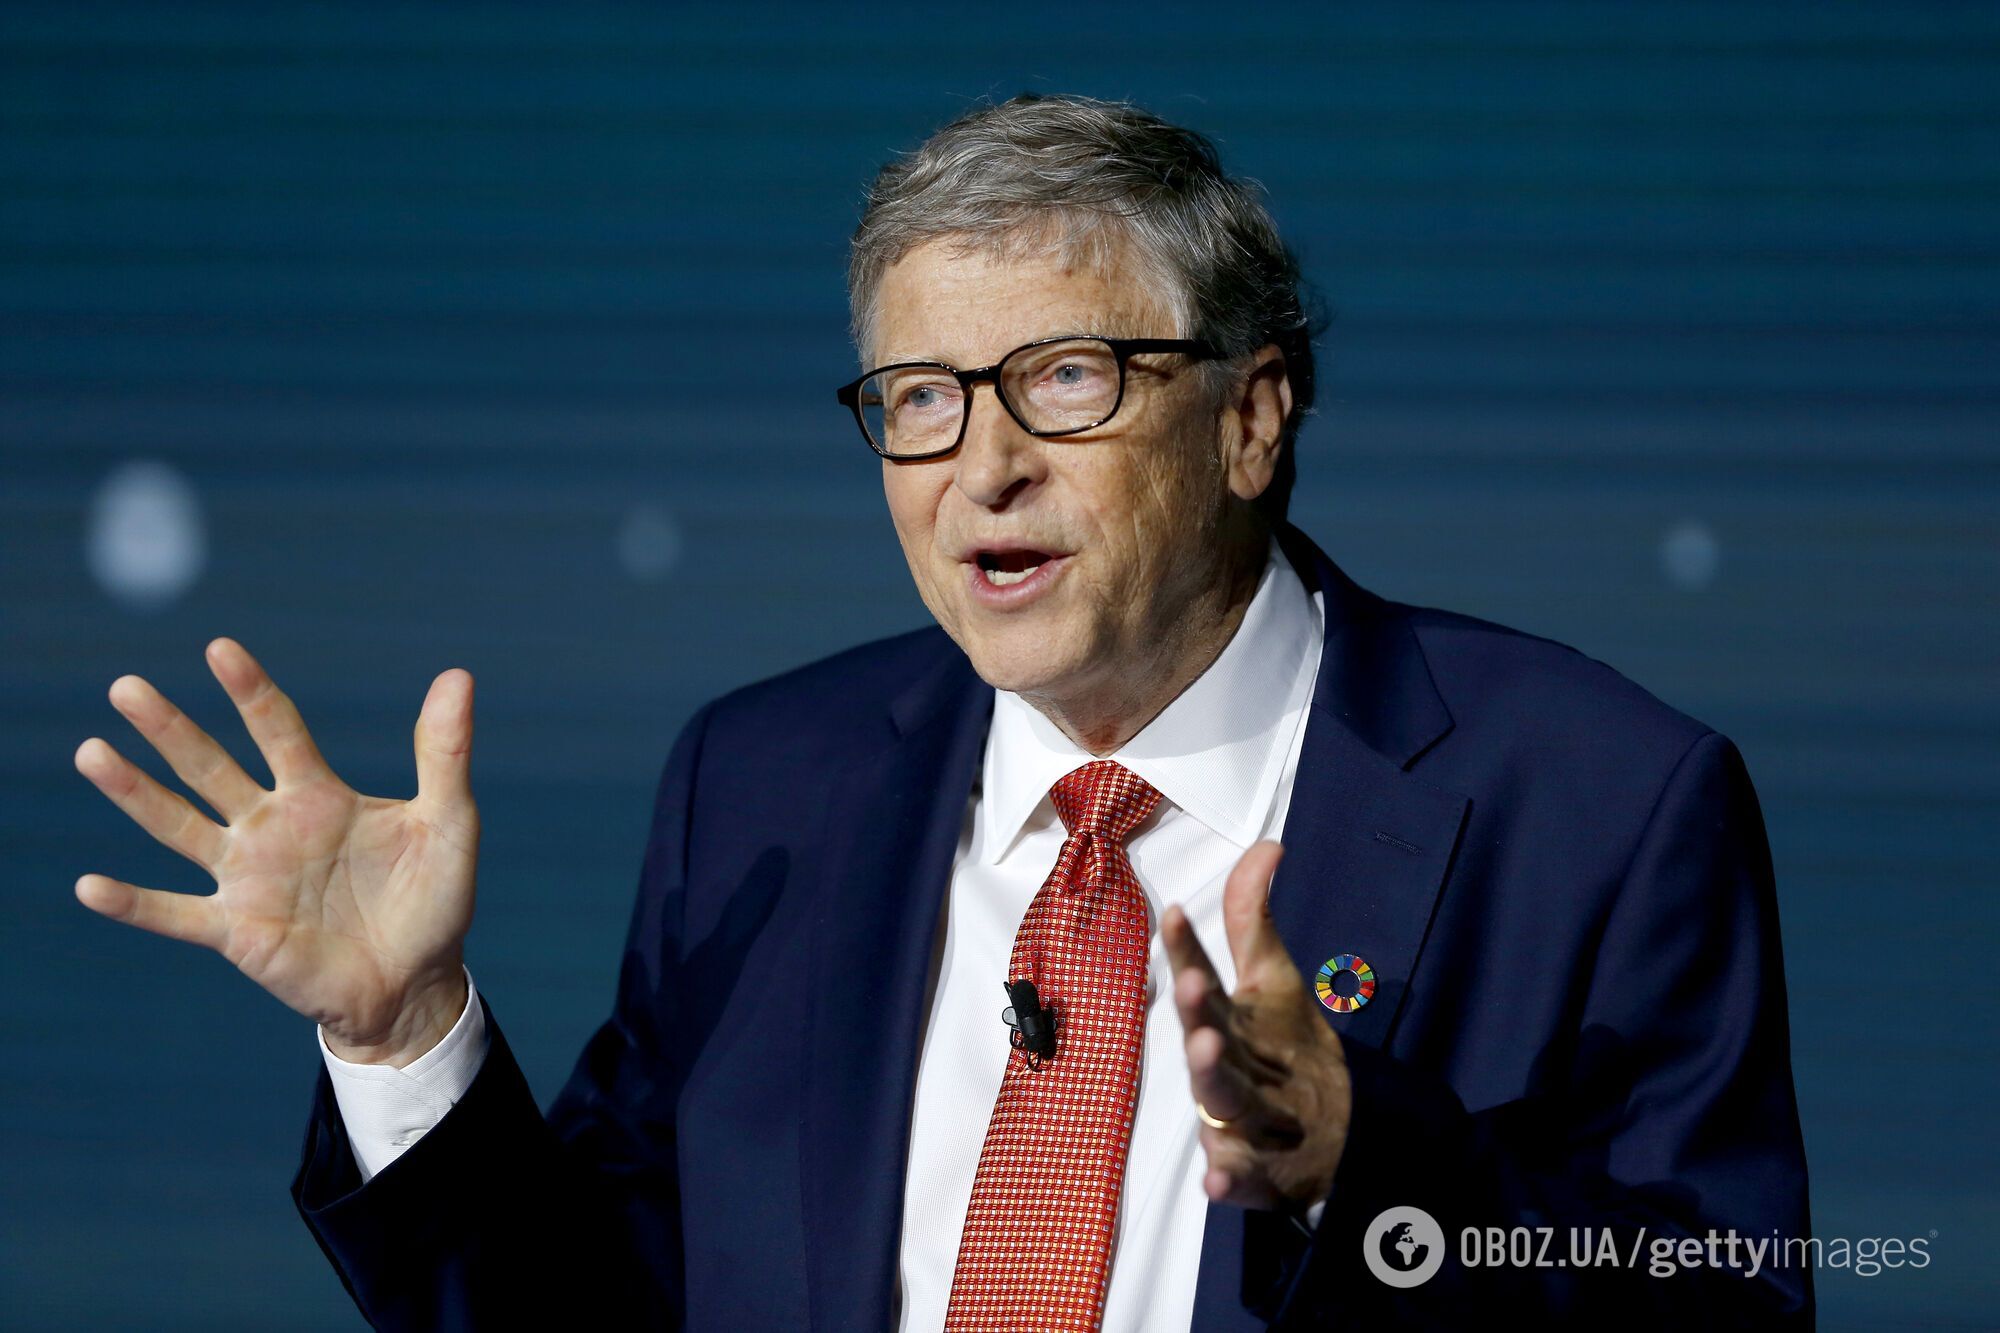 Билл Гейтс: успех кружит голову